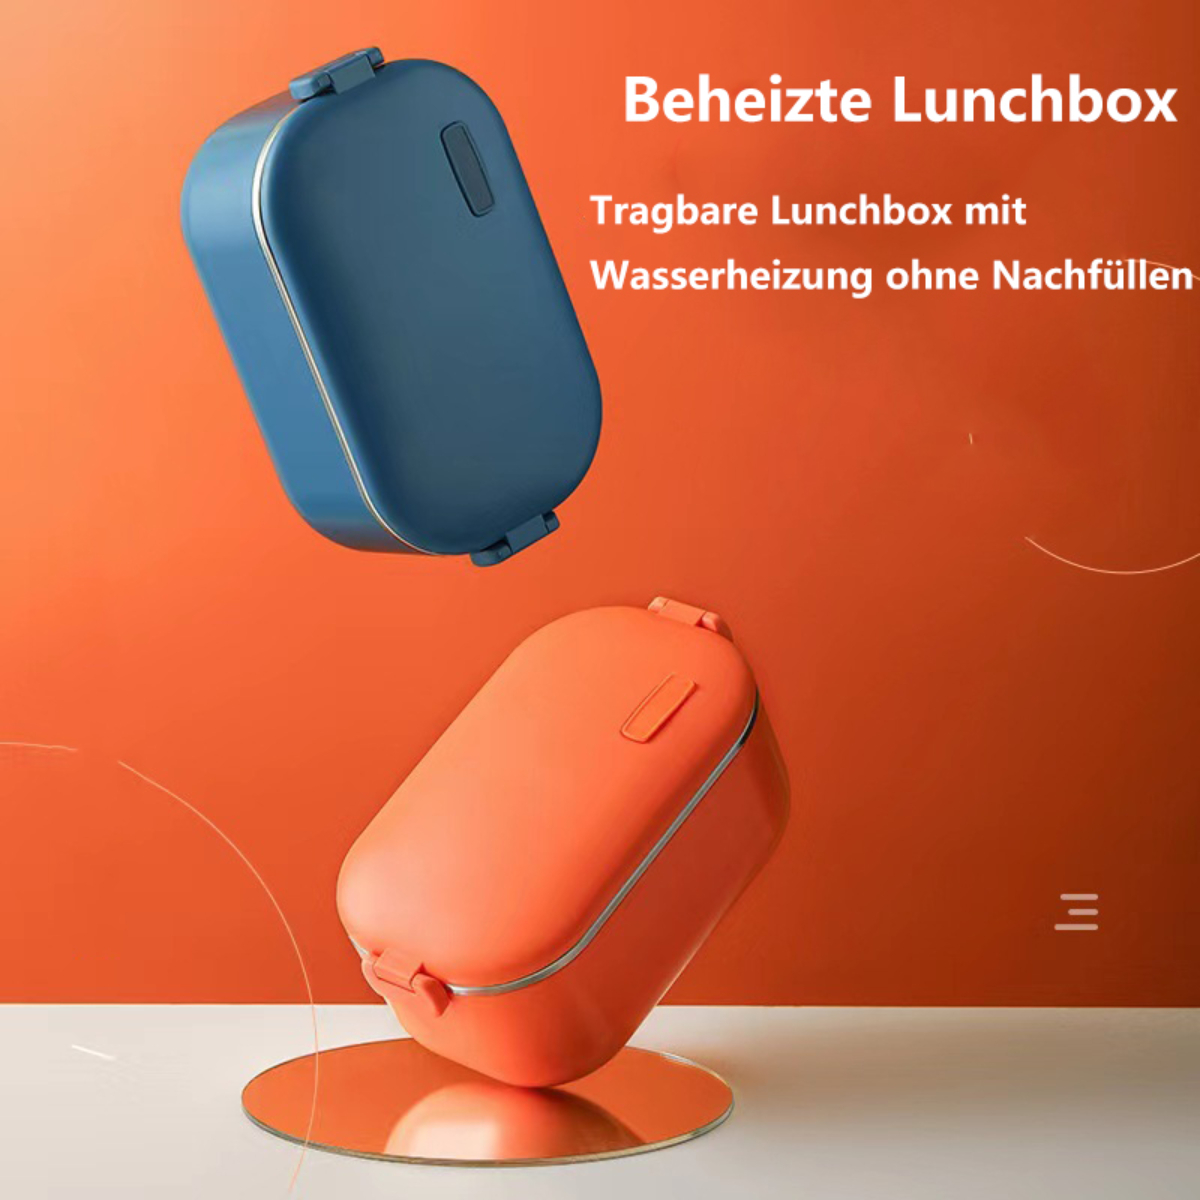 Heizung BYTELIKE elektrische tragbare Lunchbox Edelstahl wasserfrei Lunchbox verdickt Wärmeisolierung Brotdose 304